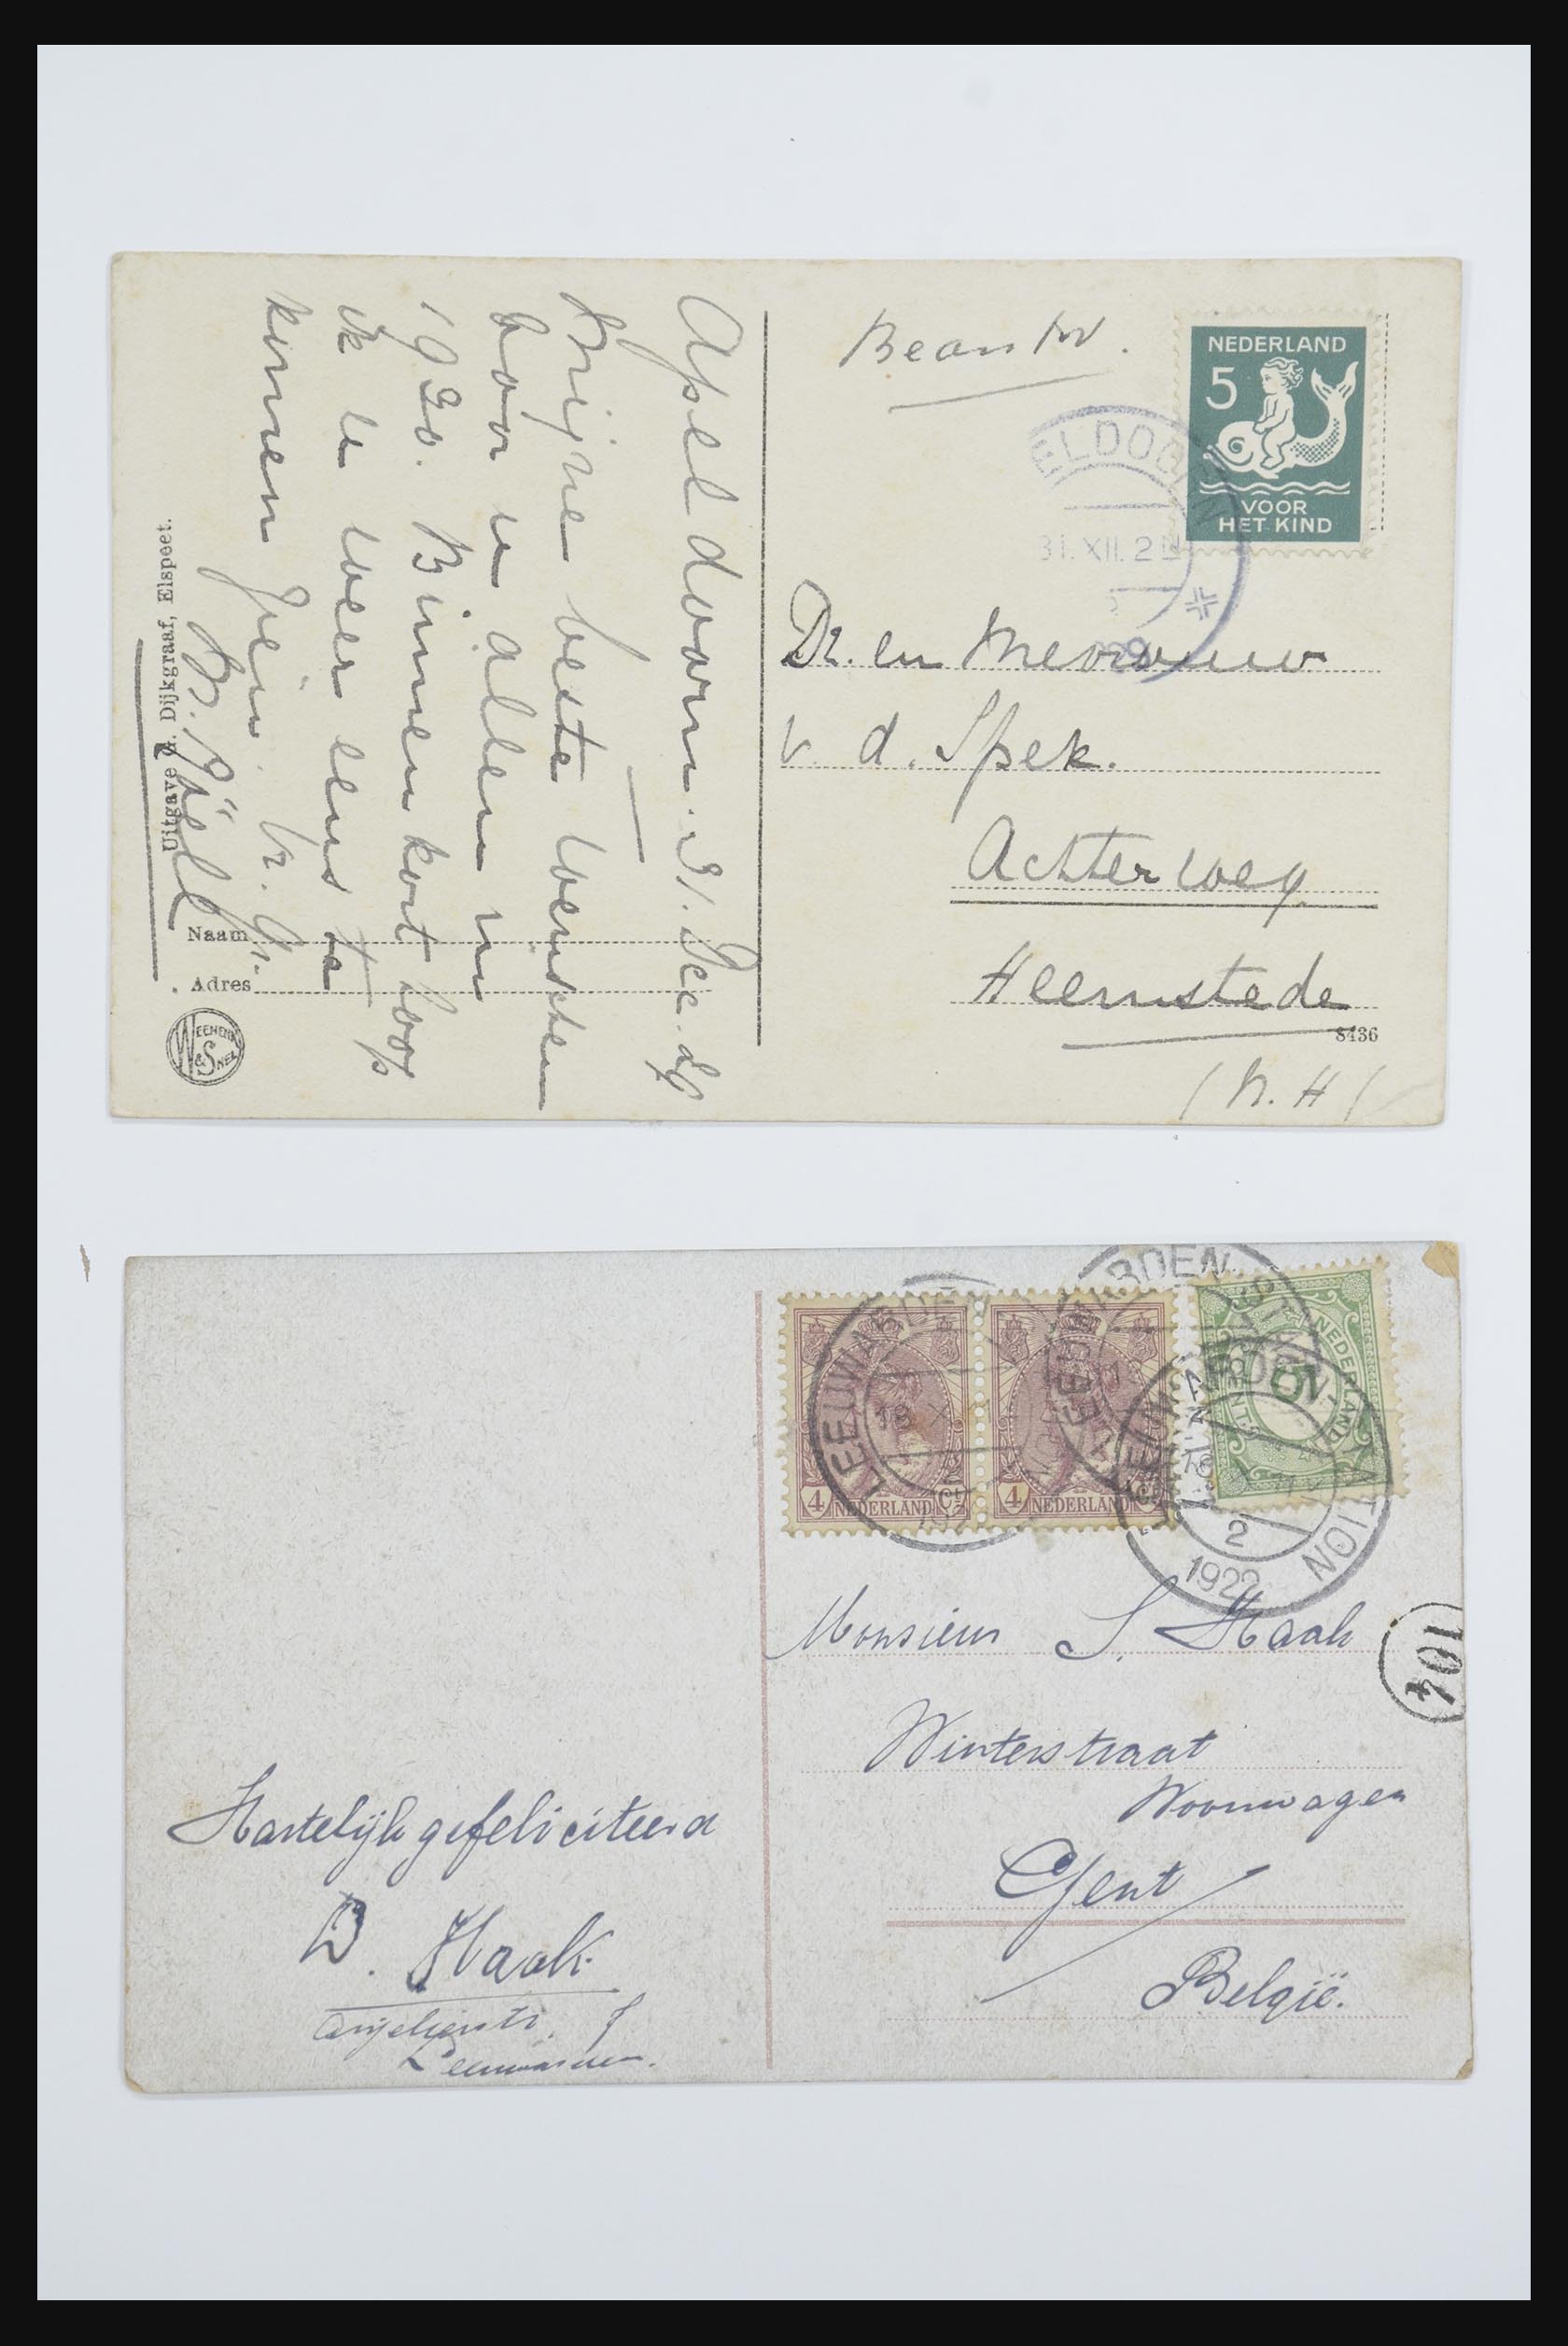 31668 047 - 31668 Nederland ansichtkaarten 1905-1935.